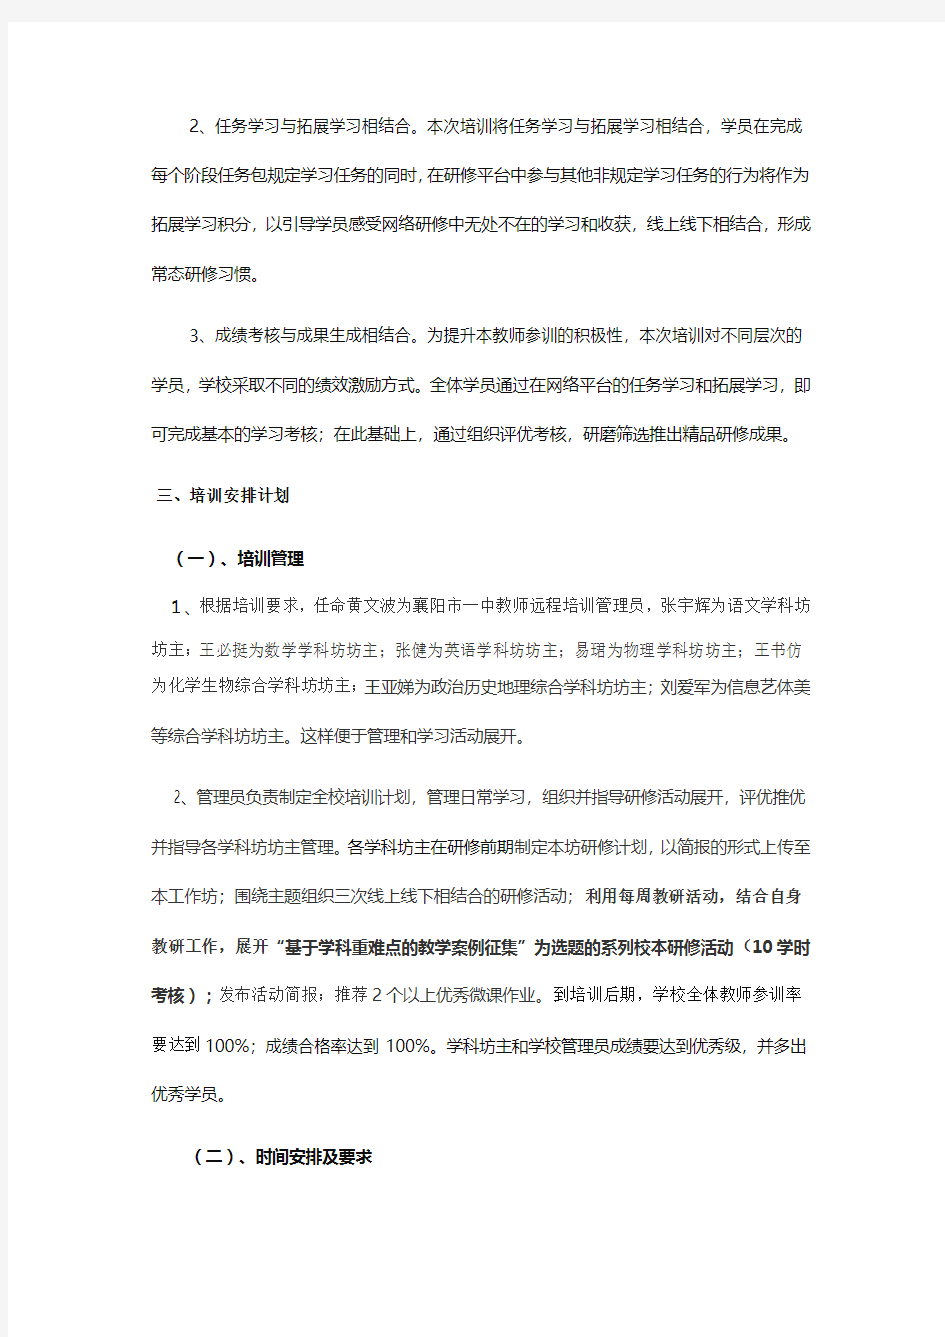 2019年襄阳一中语文教师远程培训计划